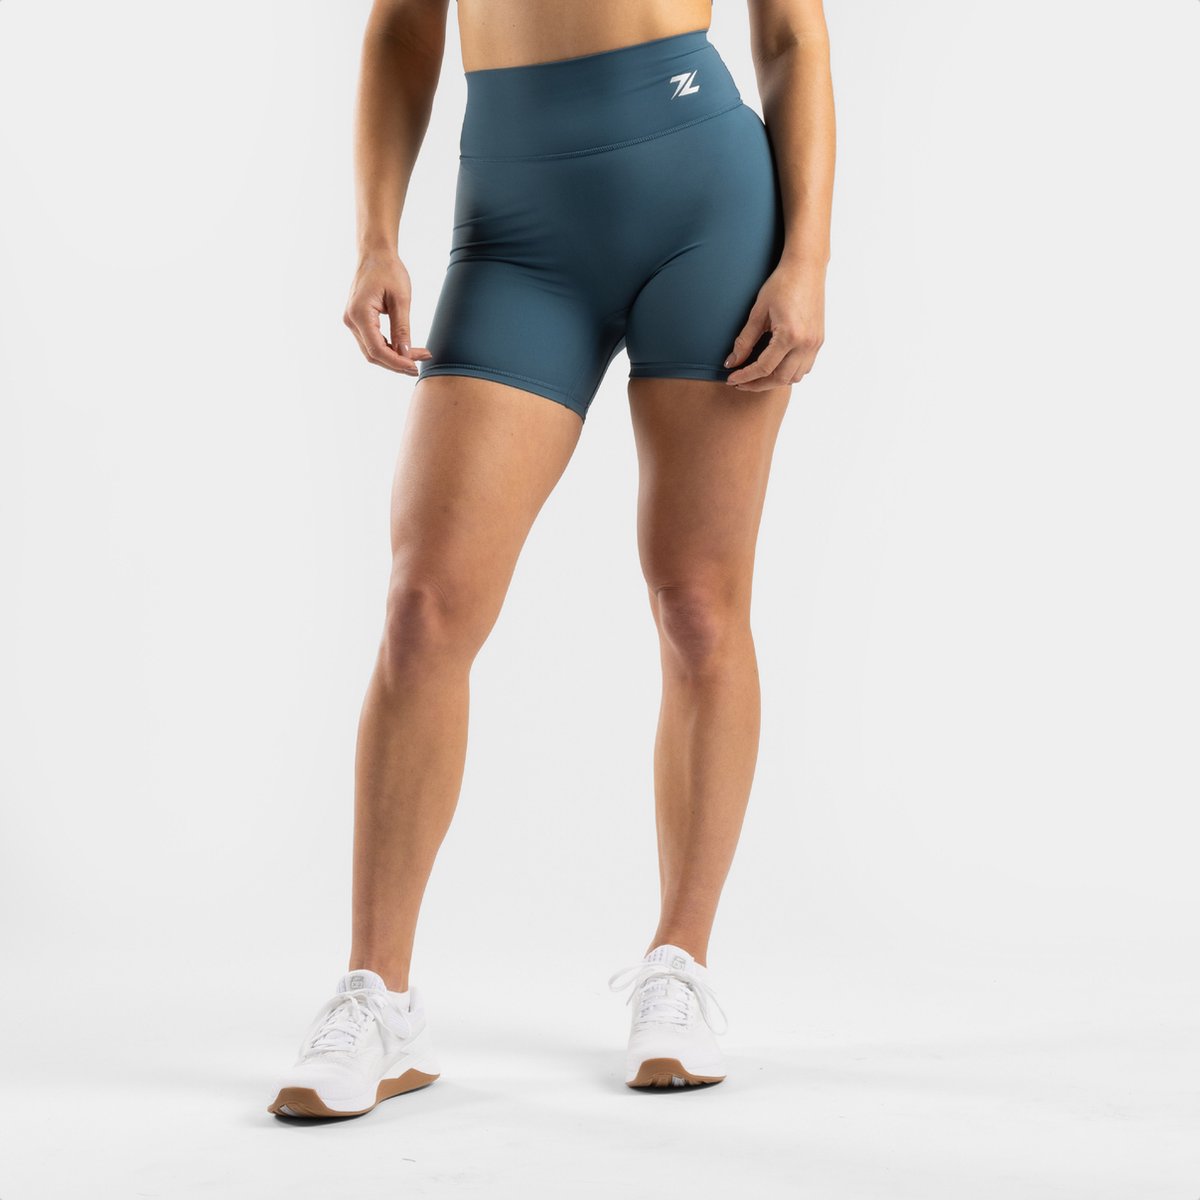 ZEUZ Korte Sport Legging Dames High Waist - Sportkleding & Sportlegging Squat Proof - Fitness & Crossfit - Hardloopbroek, Yoga Broek - 70% Nylon & 30% Elastaan - Blauw - Maat M